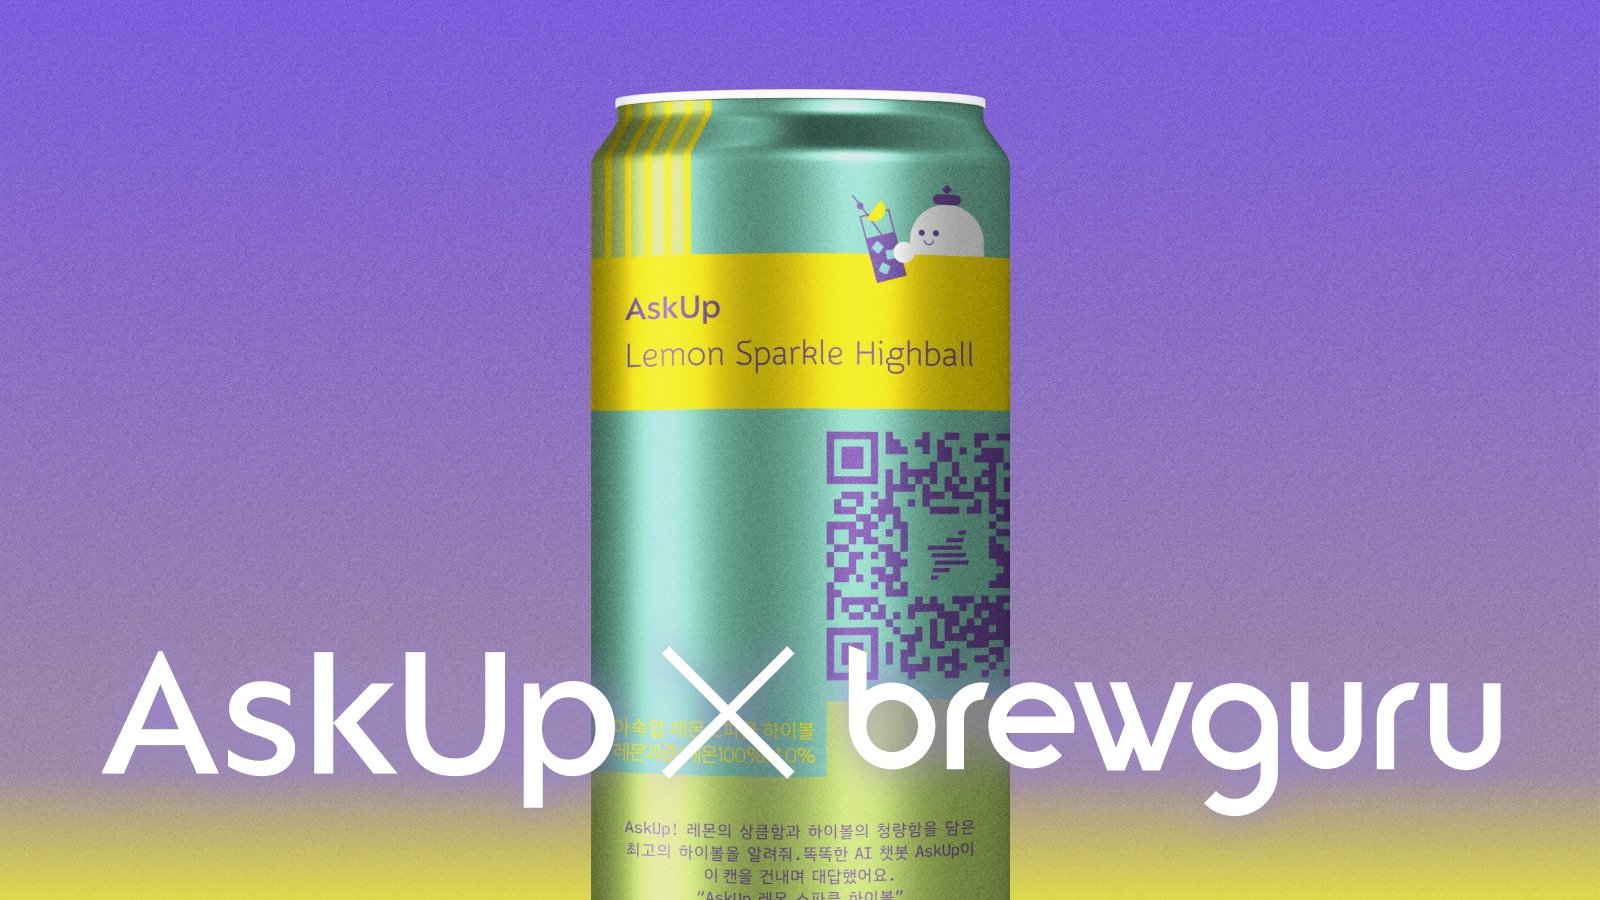 Released AskUp Lemon Sparkle Highball [Upstage X Buruguru]